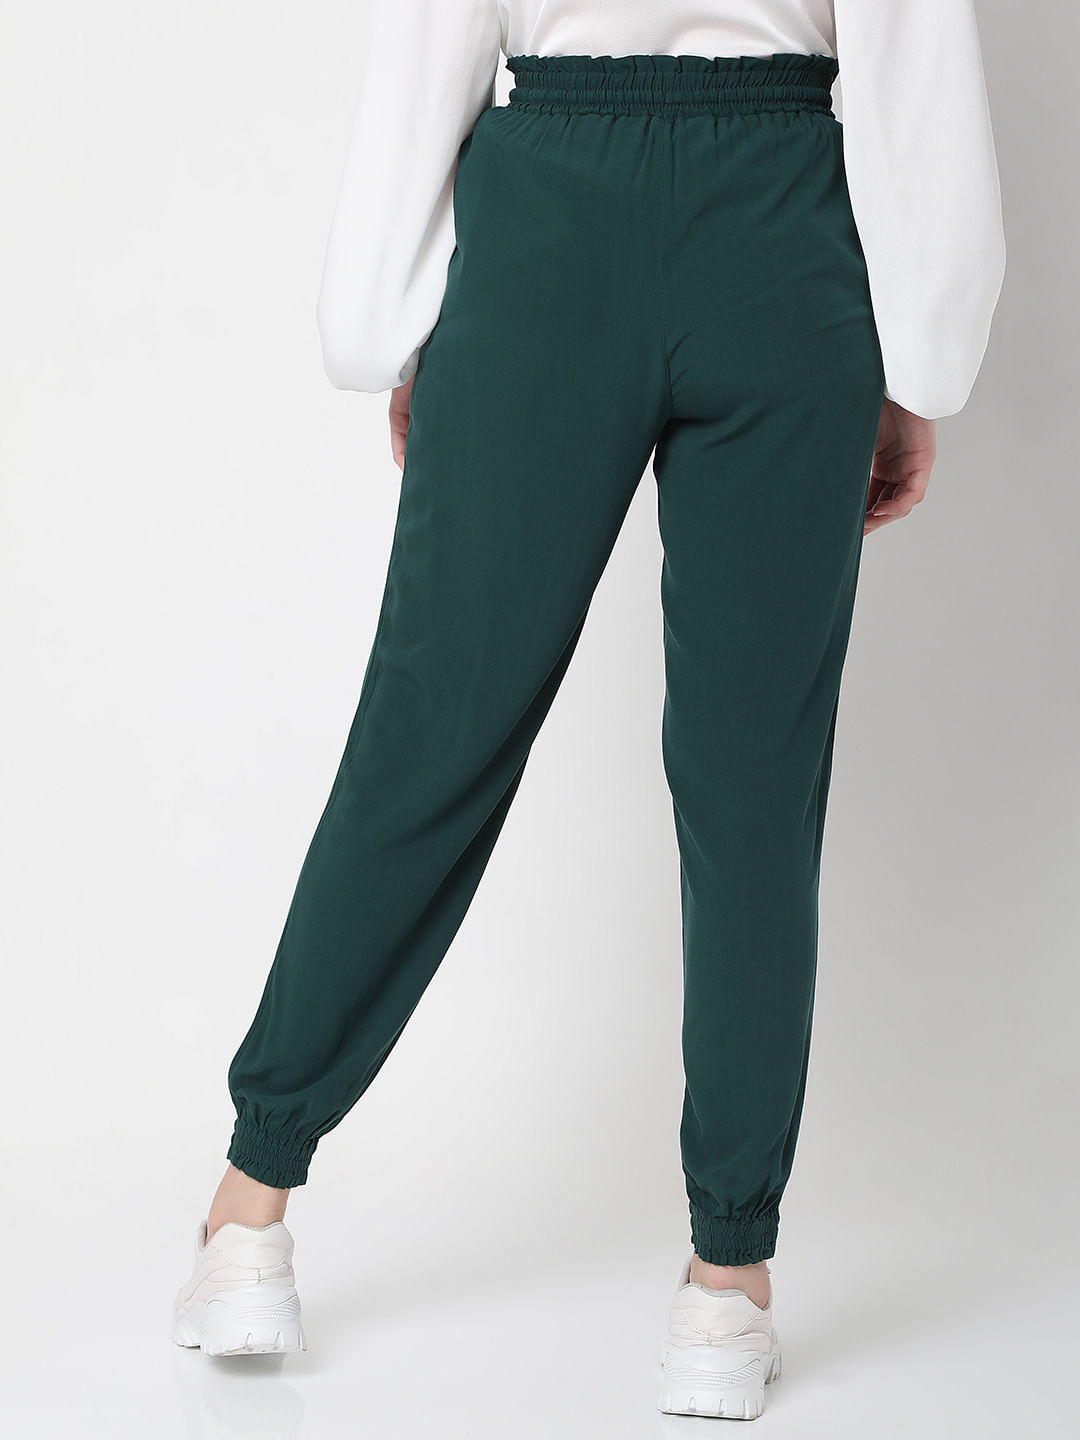 Buy Women Green Regular Fit Solid Casual Jogger Pants Online  610130   Allen Solly